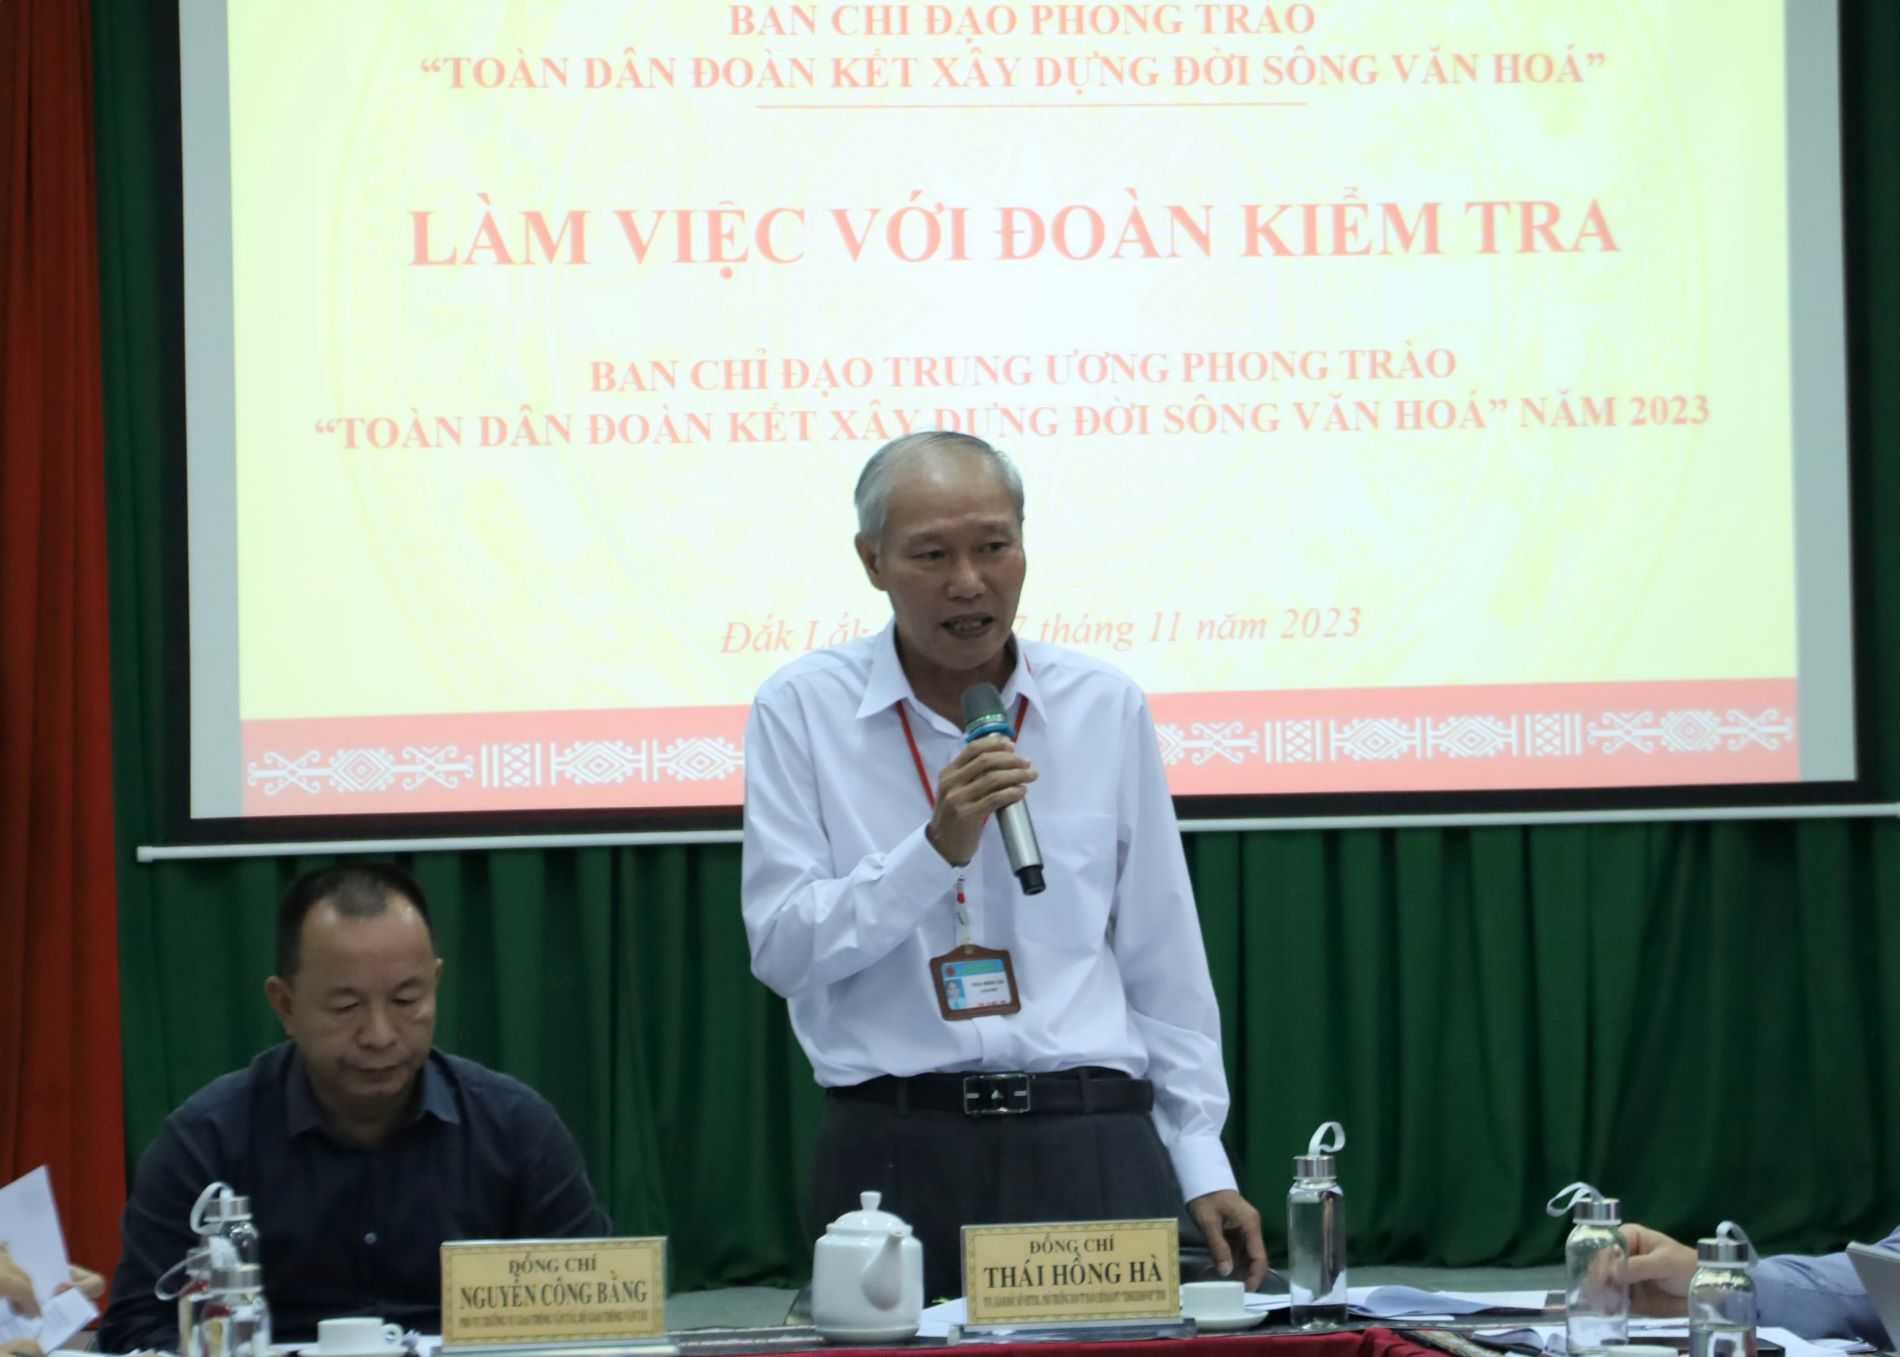 Giám đốc Sở Văn hóa, Thể thao và Du lịch tỉnh Đắk Lắk Thái Hồng Hà phát biểu tại buổi làm việc.